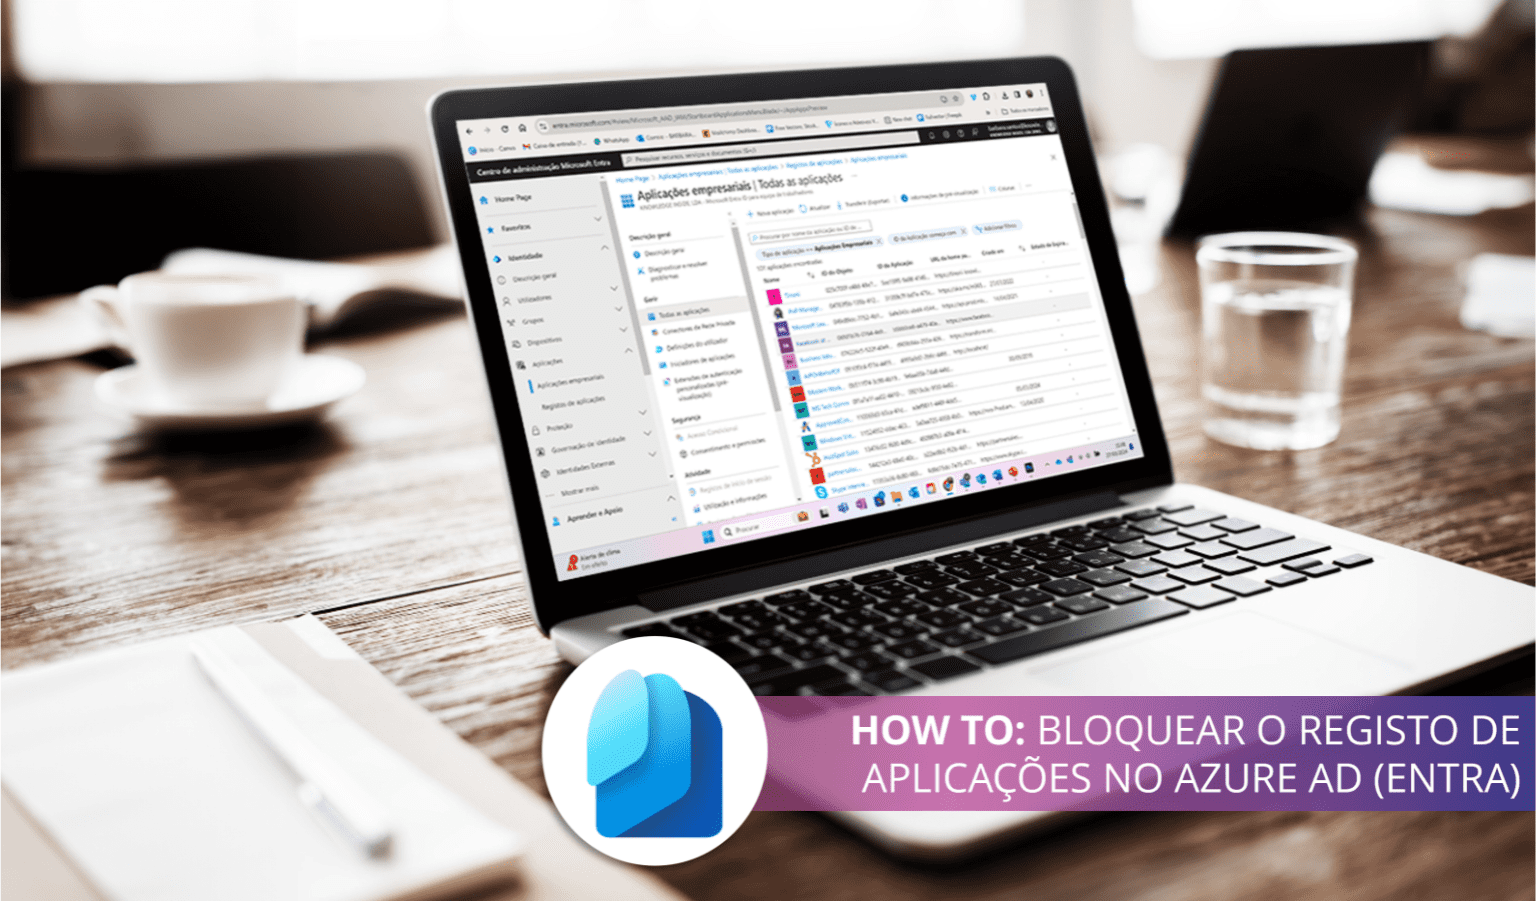 HOW TO: Bloquear o registo de aplicações no Azure AD (Entra)  